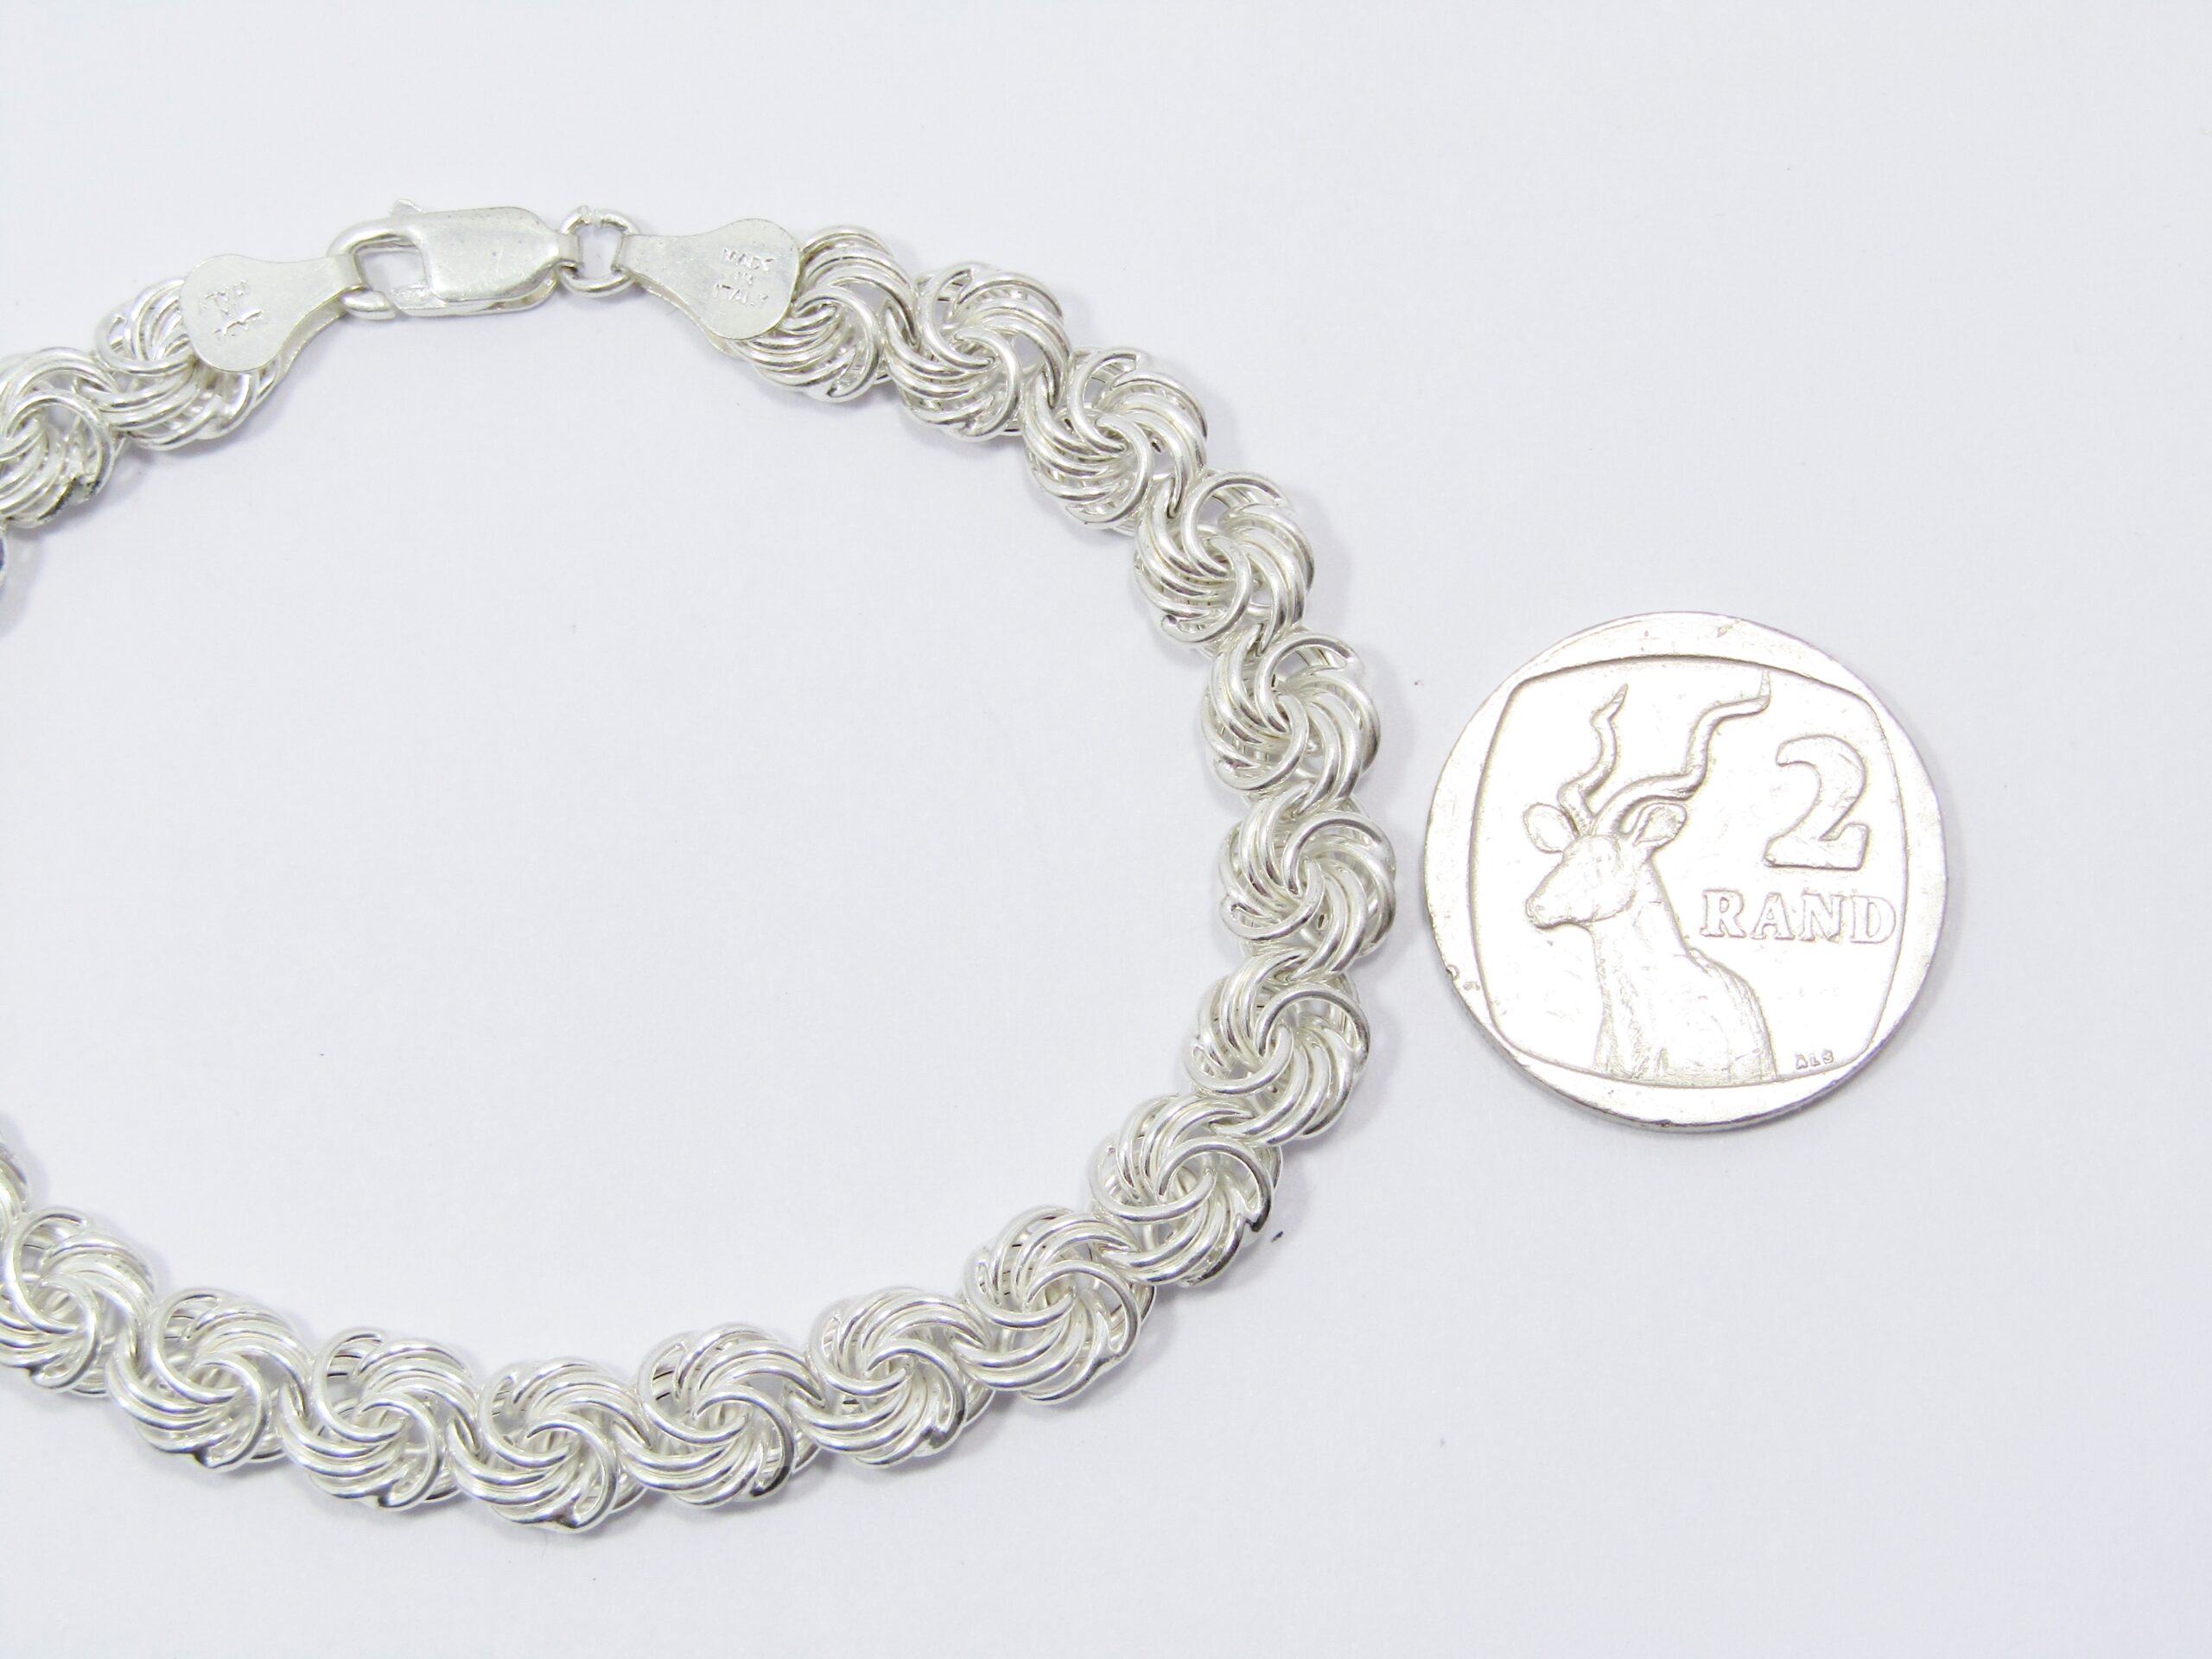 A Gorgeous Fancy Link Bracelet in Sterling Silver.